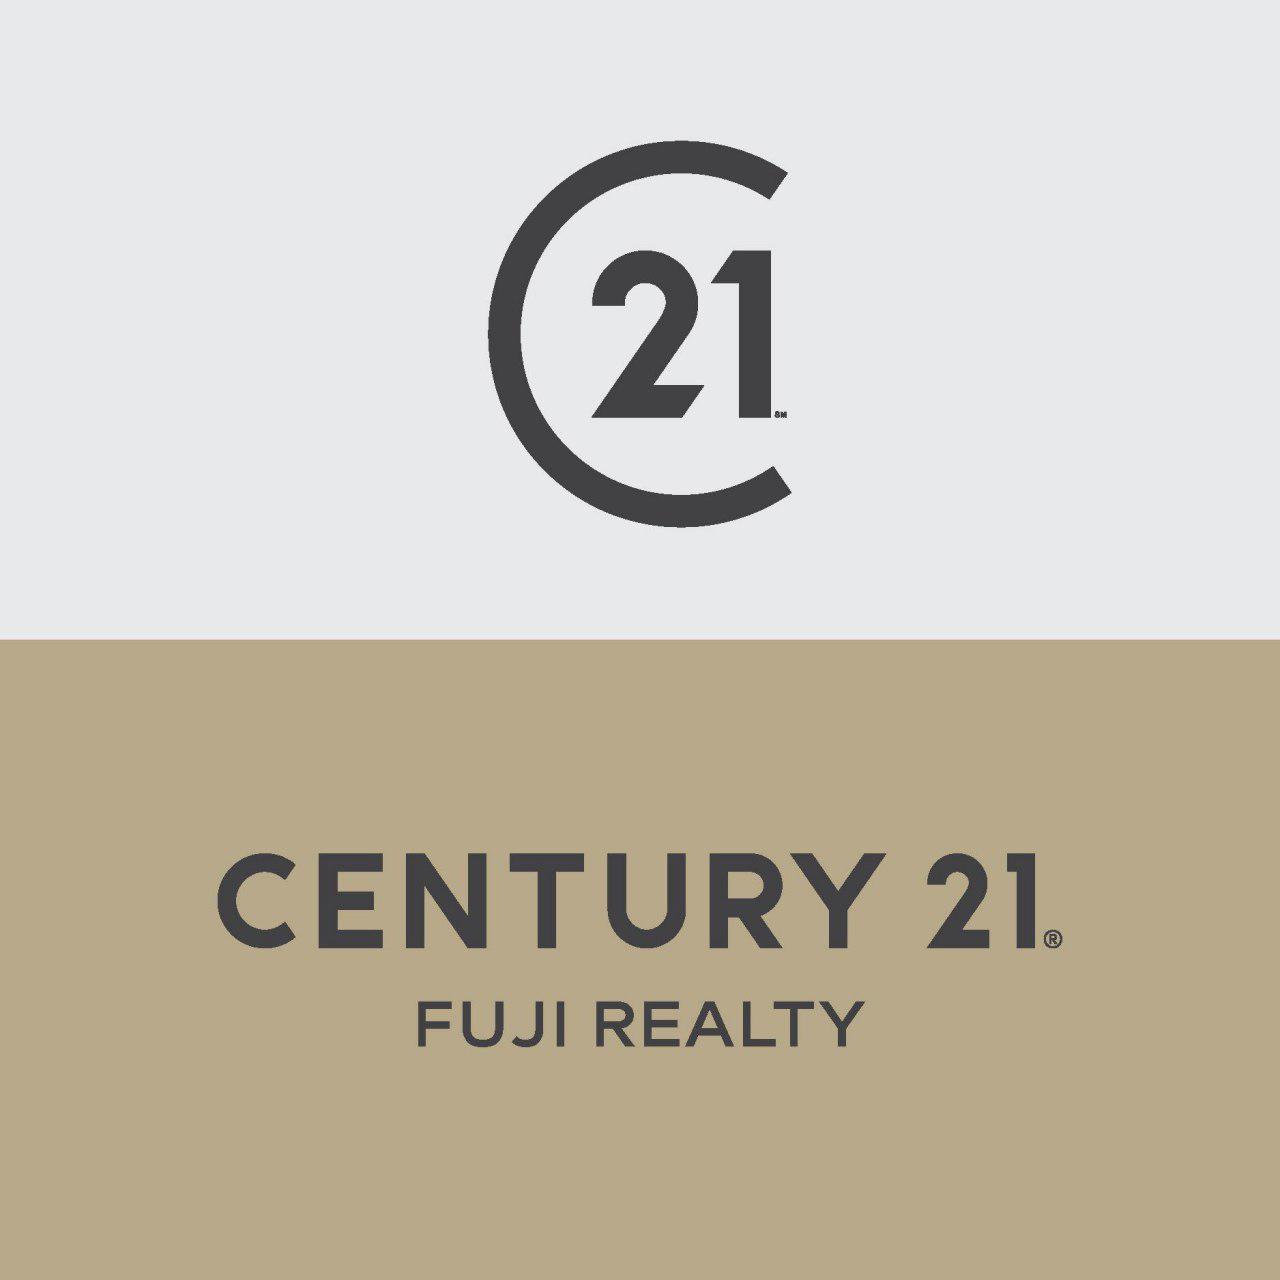 Century 21 Fuji Realty